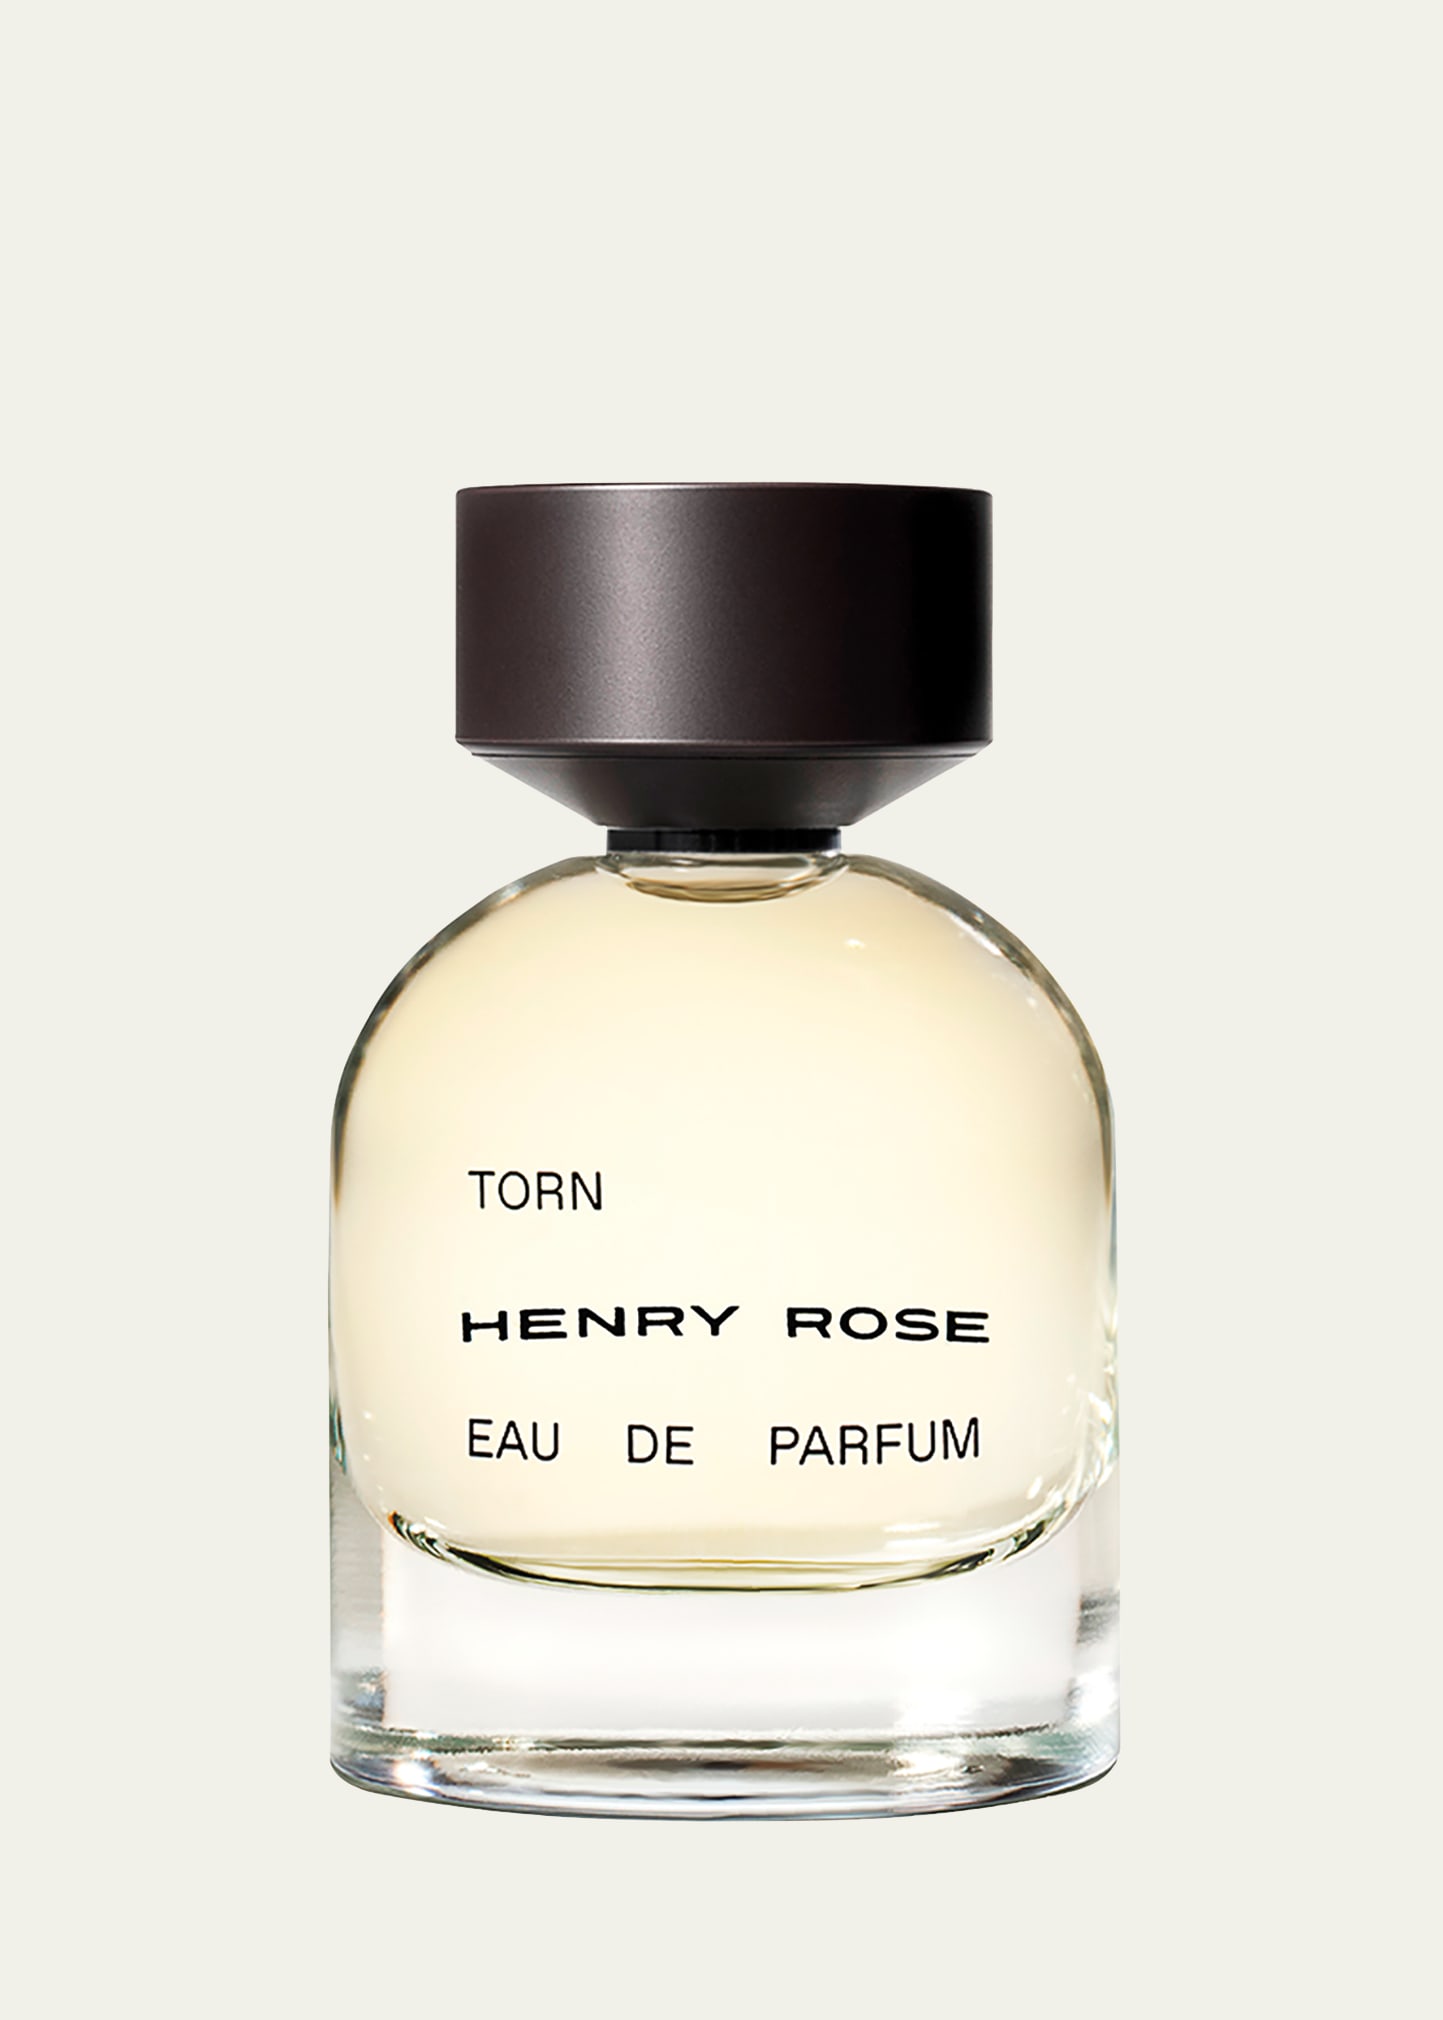 Torn Eau de Parfum, 1.7 oz.